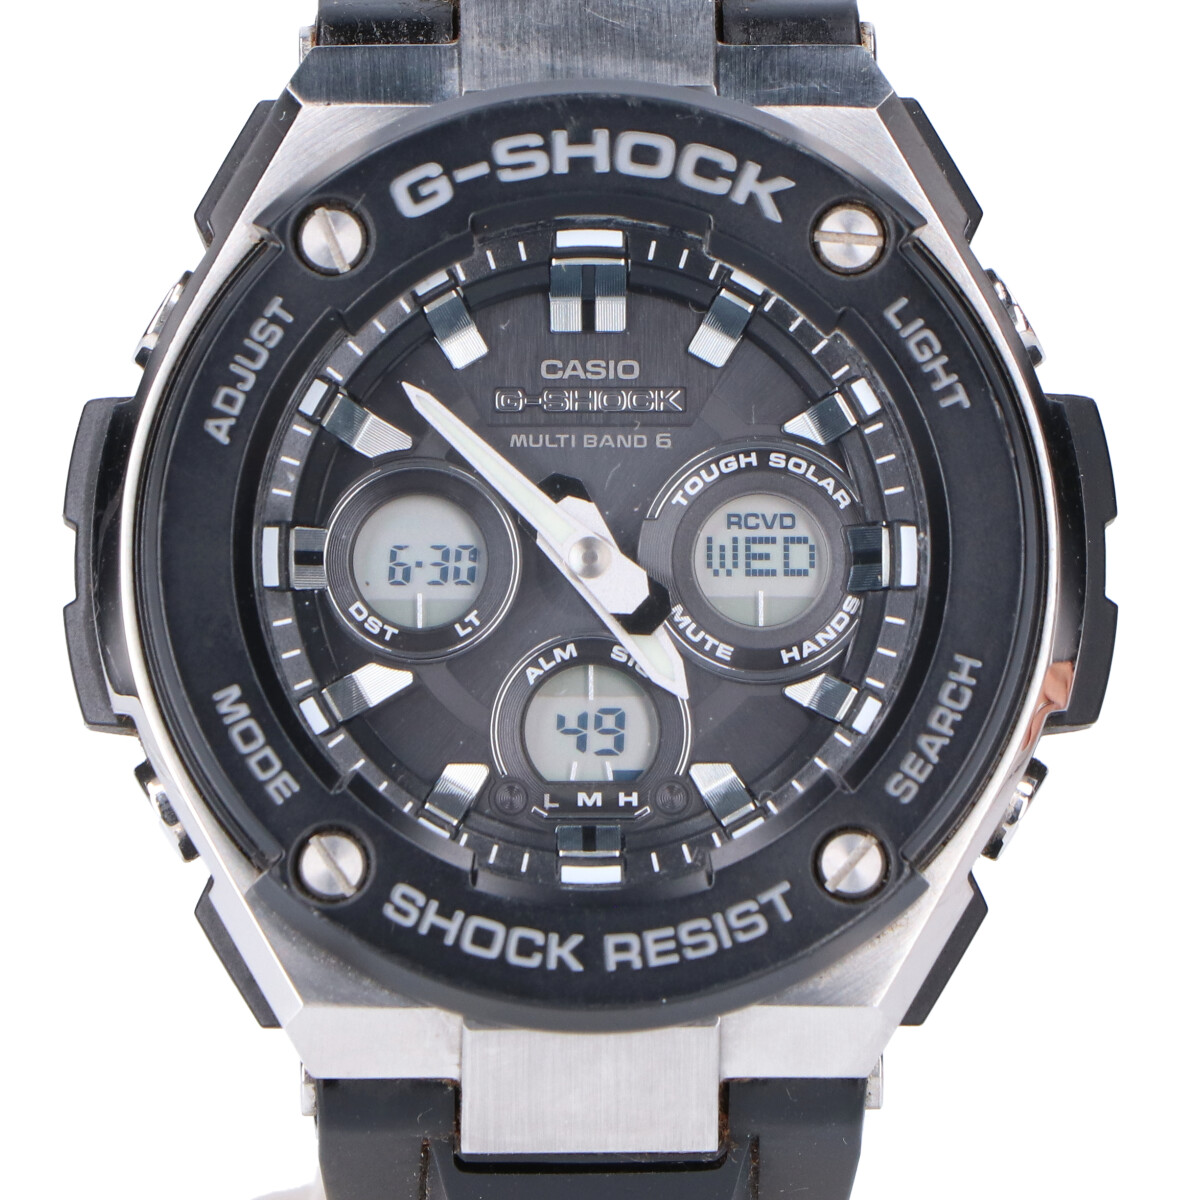 ジーショックのGST-W300-1AJF G-STEEL マルチバンド6 タフソーラー電波腕時計の買取実績です。